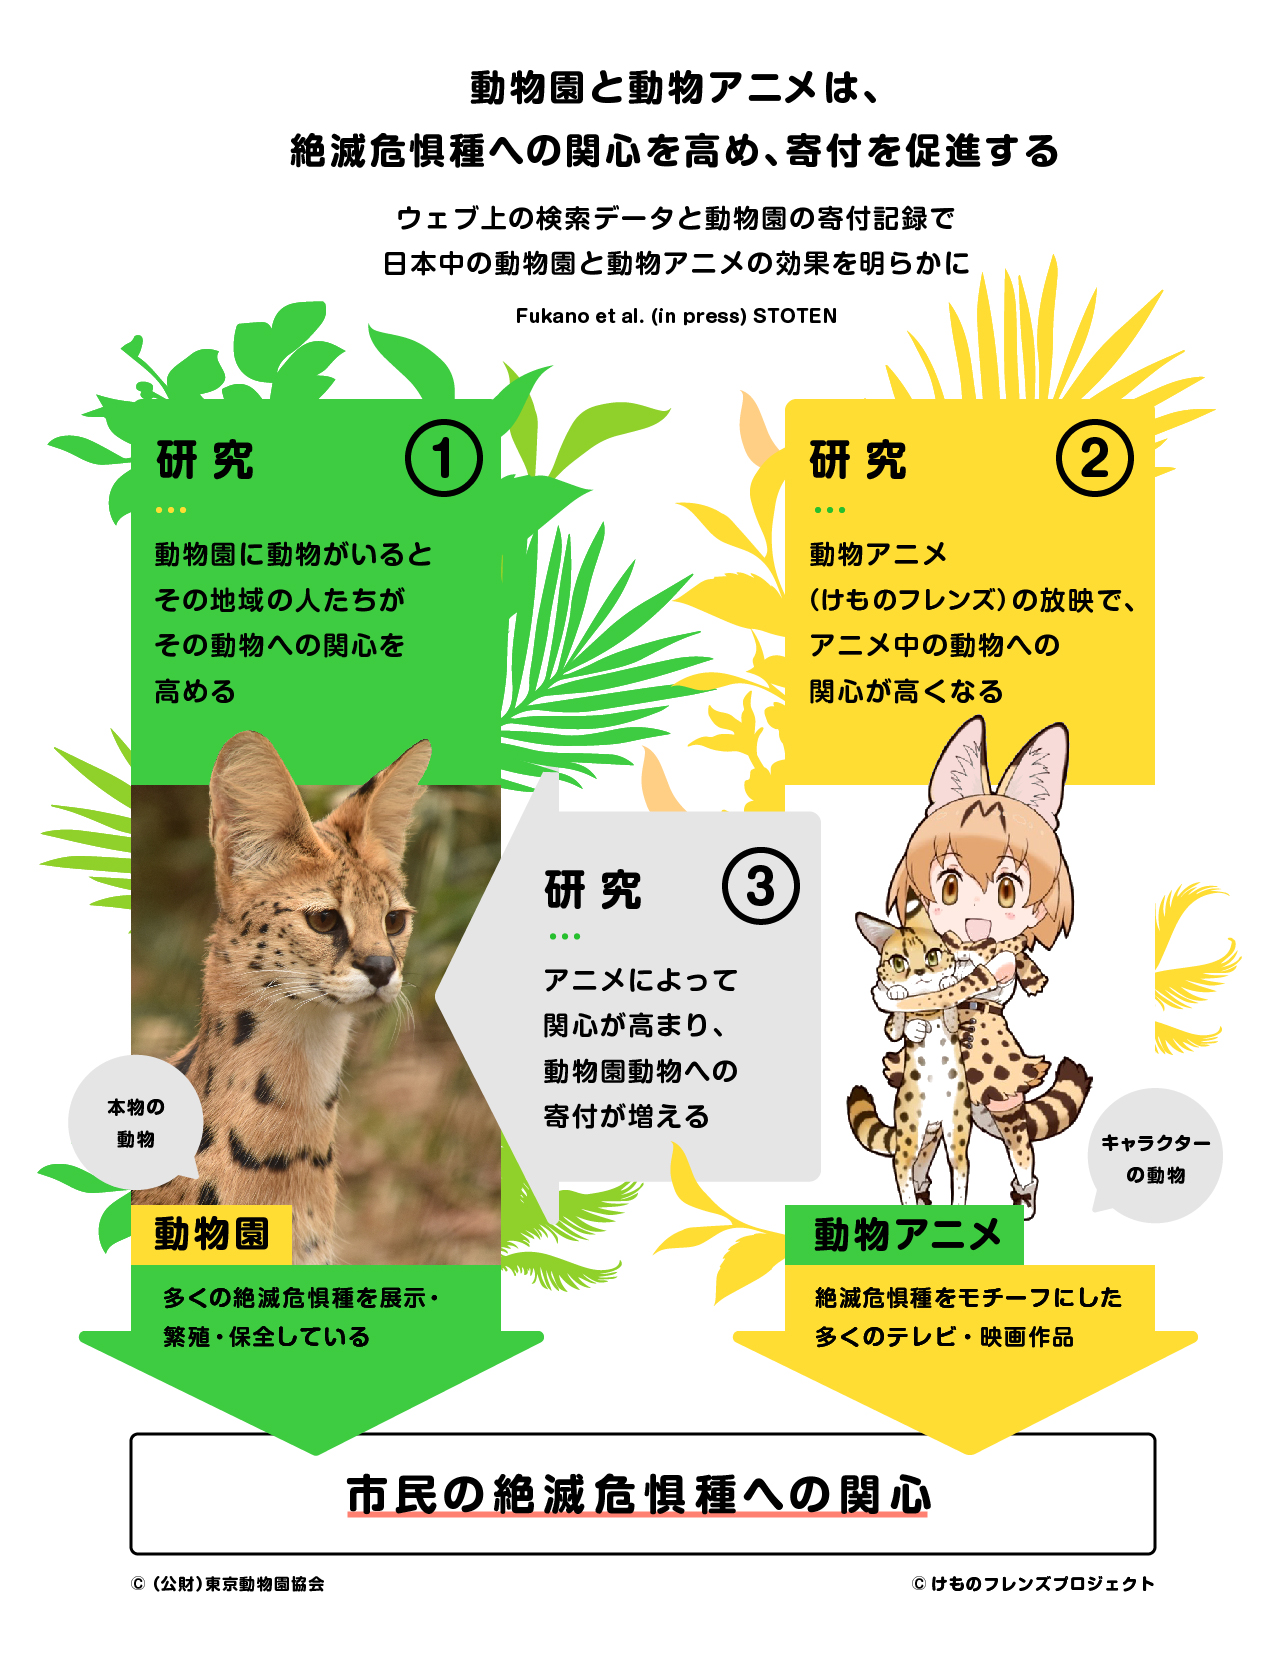 日本中で愛を叫んだけもの 動物園と動物アニメは 絶滅危惧種への